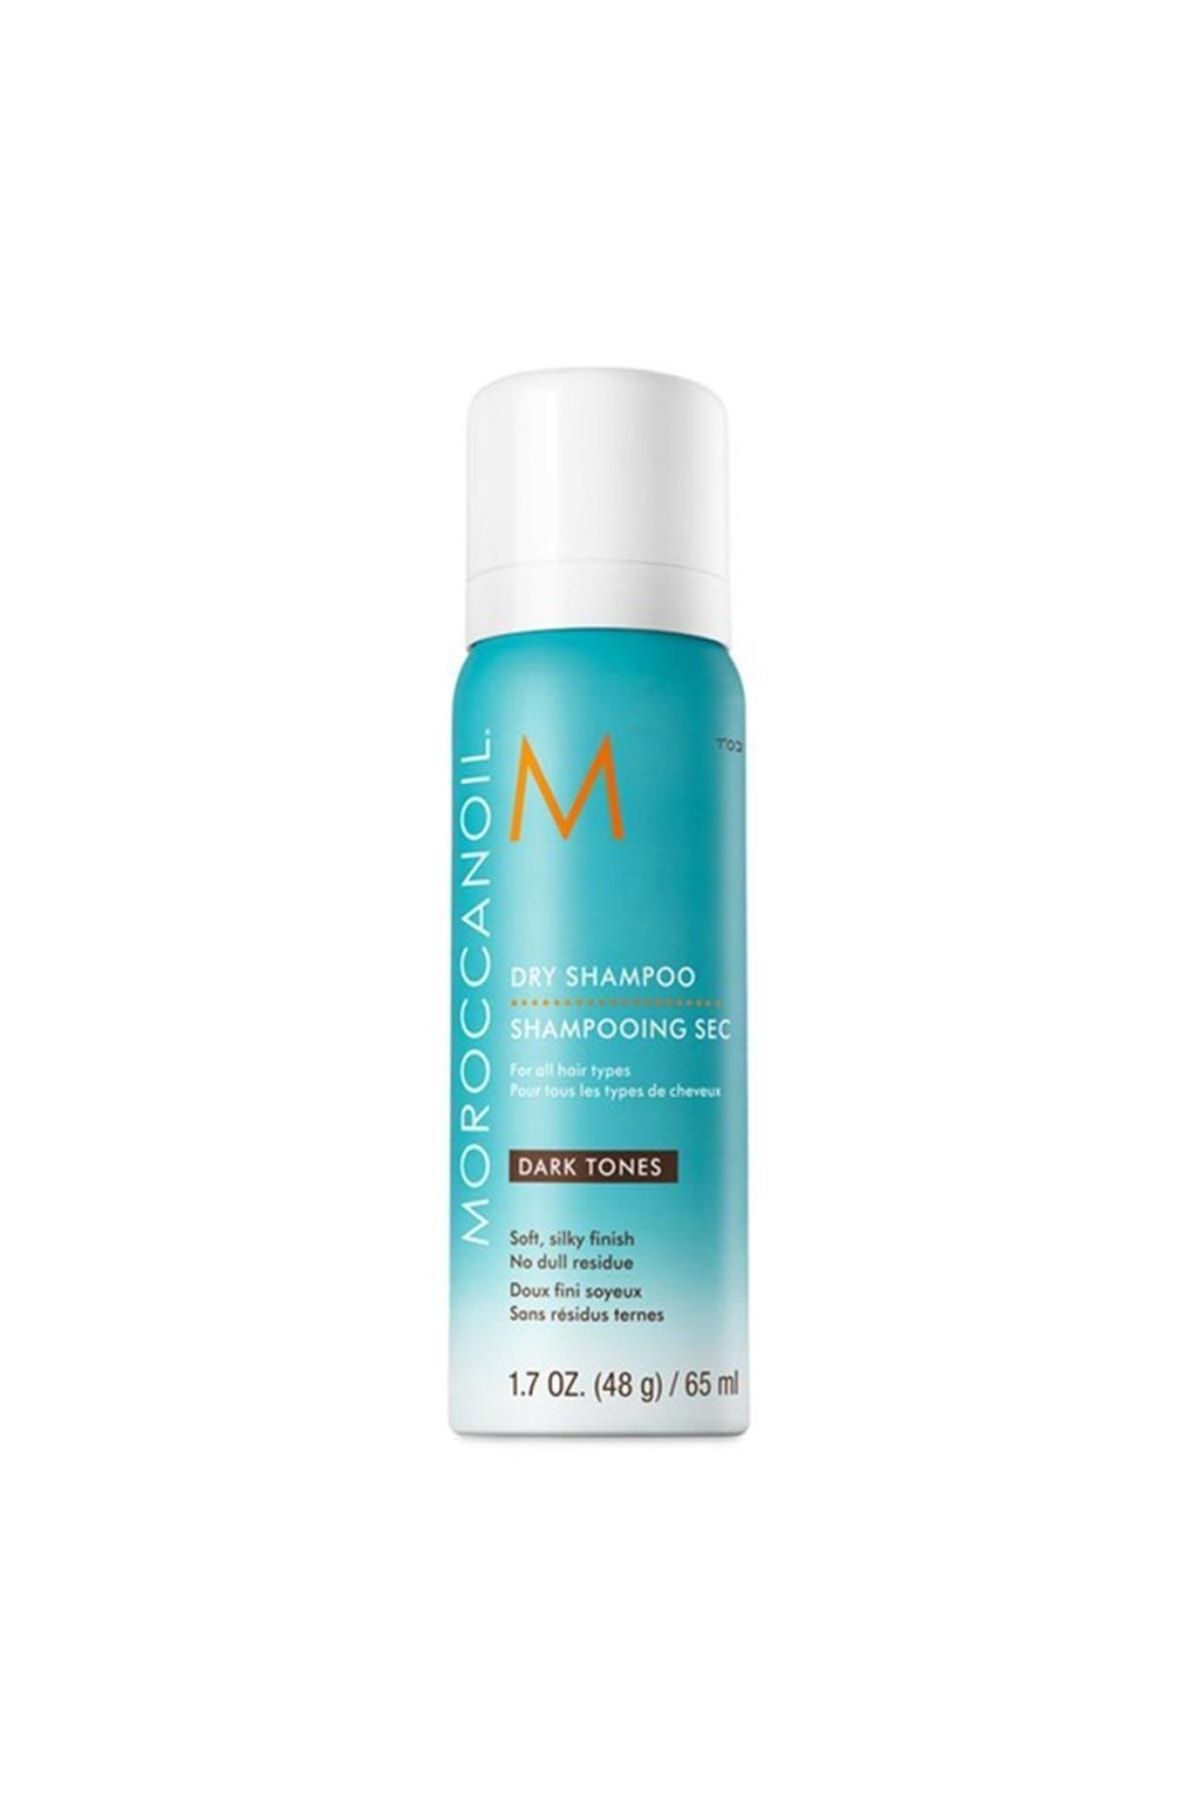 Moroccanoil Dry Shampoo Koyu Renk Saçlar Için Kuru Şampuan 65ml